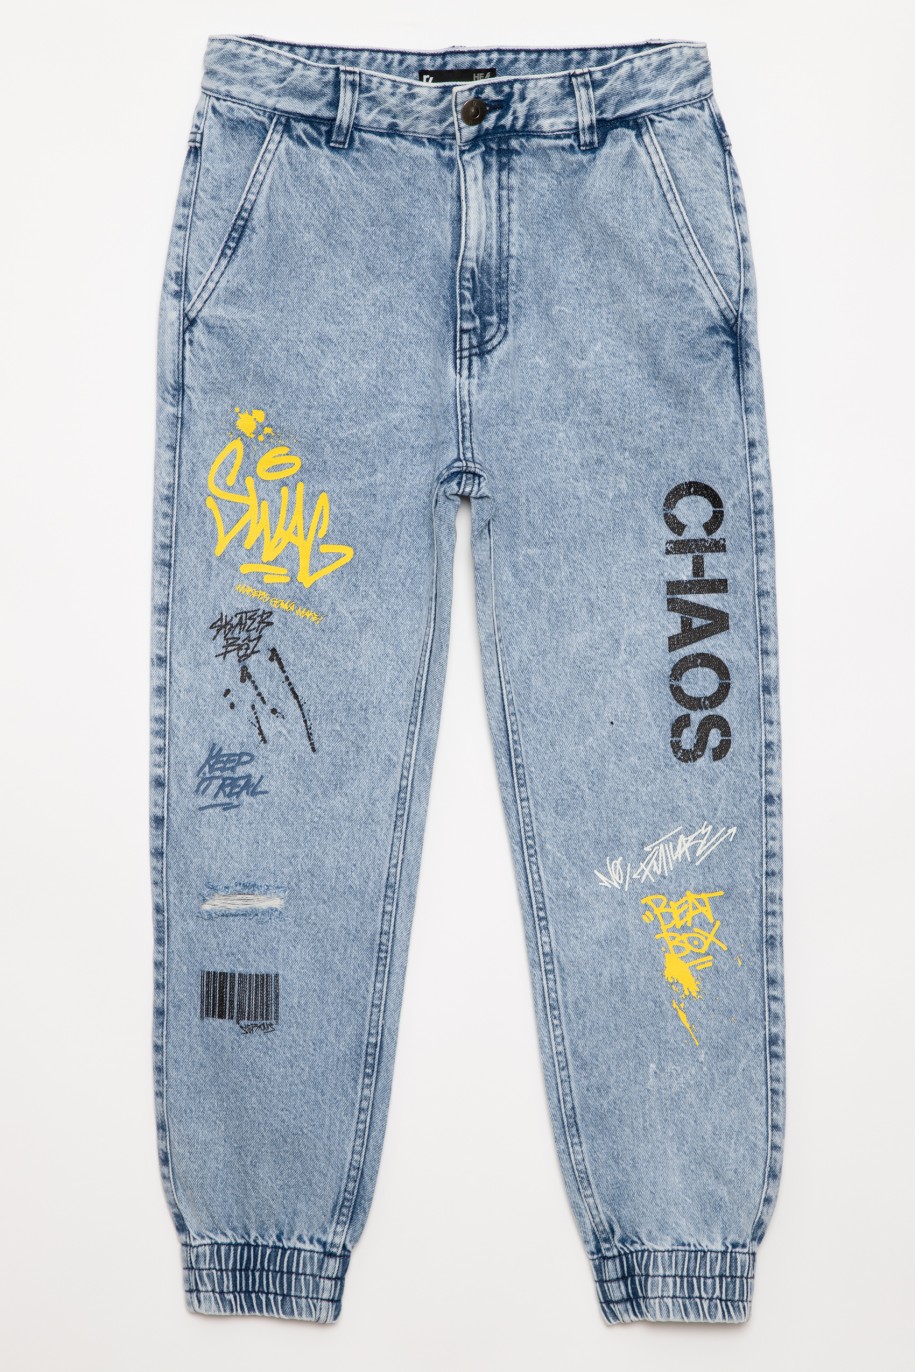 Niebieskie jeansy typu jogger z nadrukami dla chłopaka - 33457